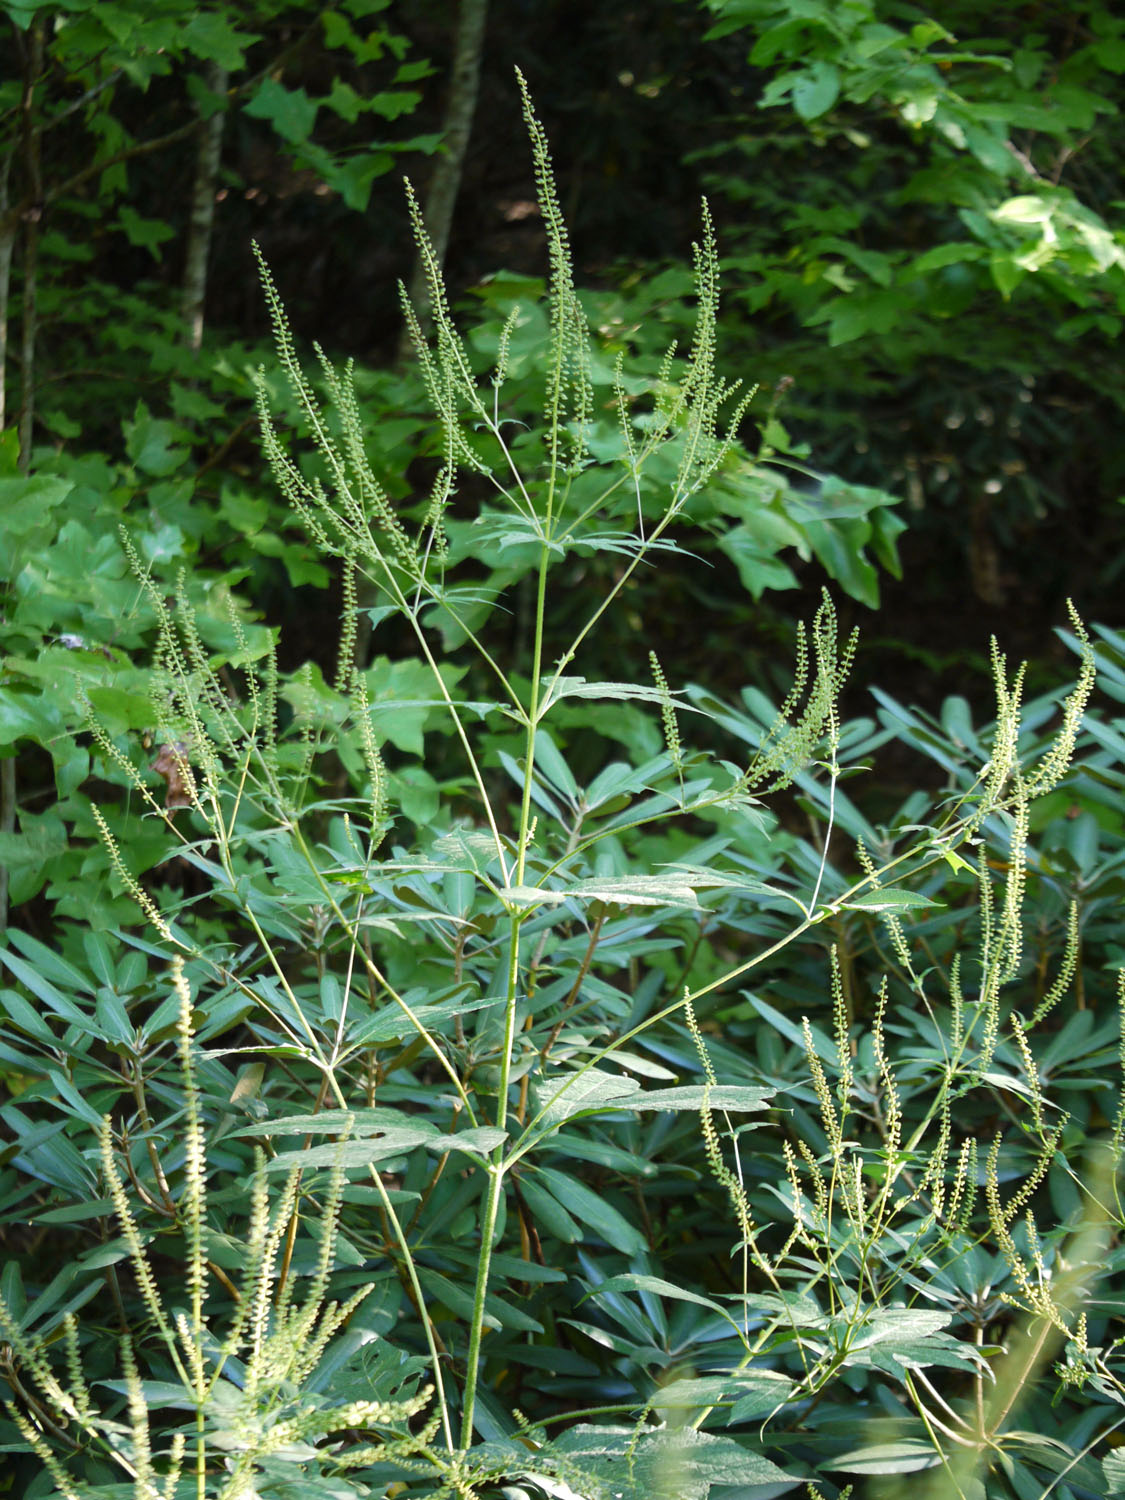 Great ragweed